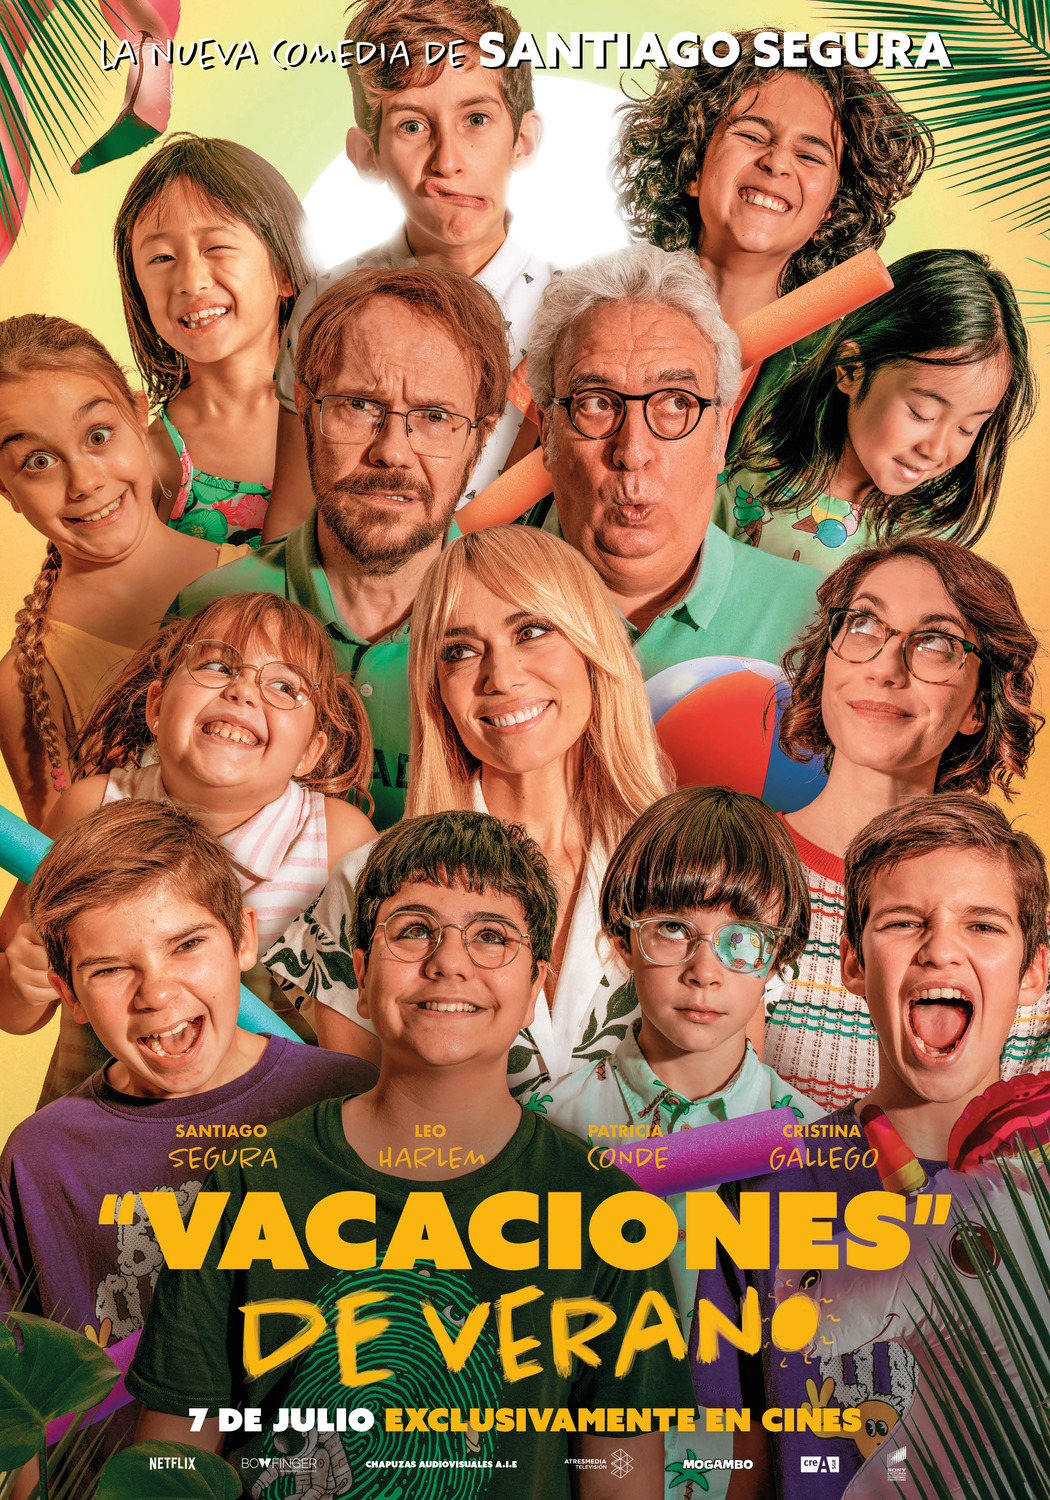 Extra Large Movie Poster Image for Vacaciones de verano (#1 of 2)